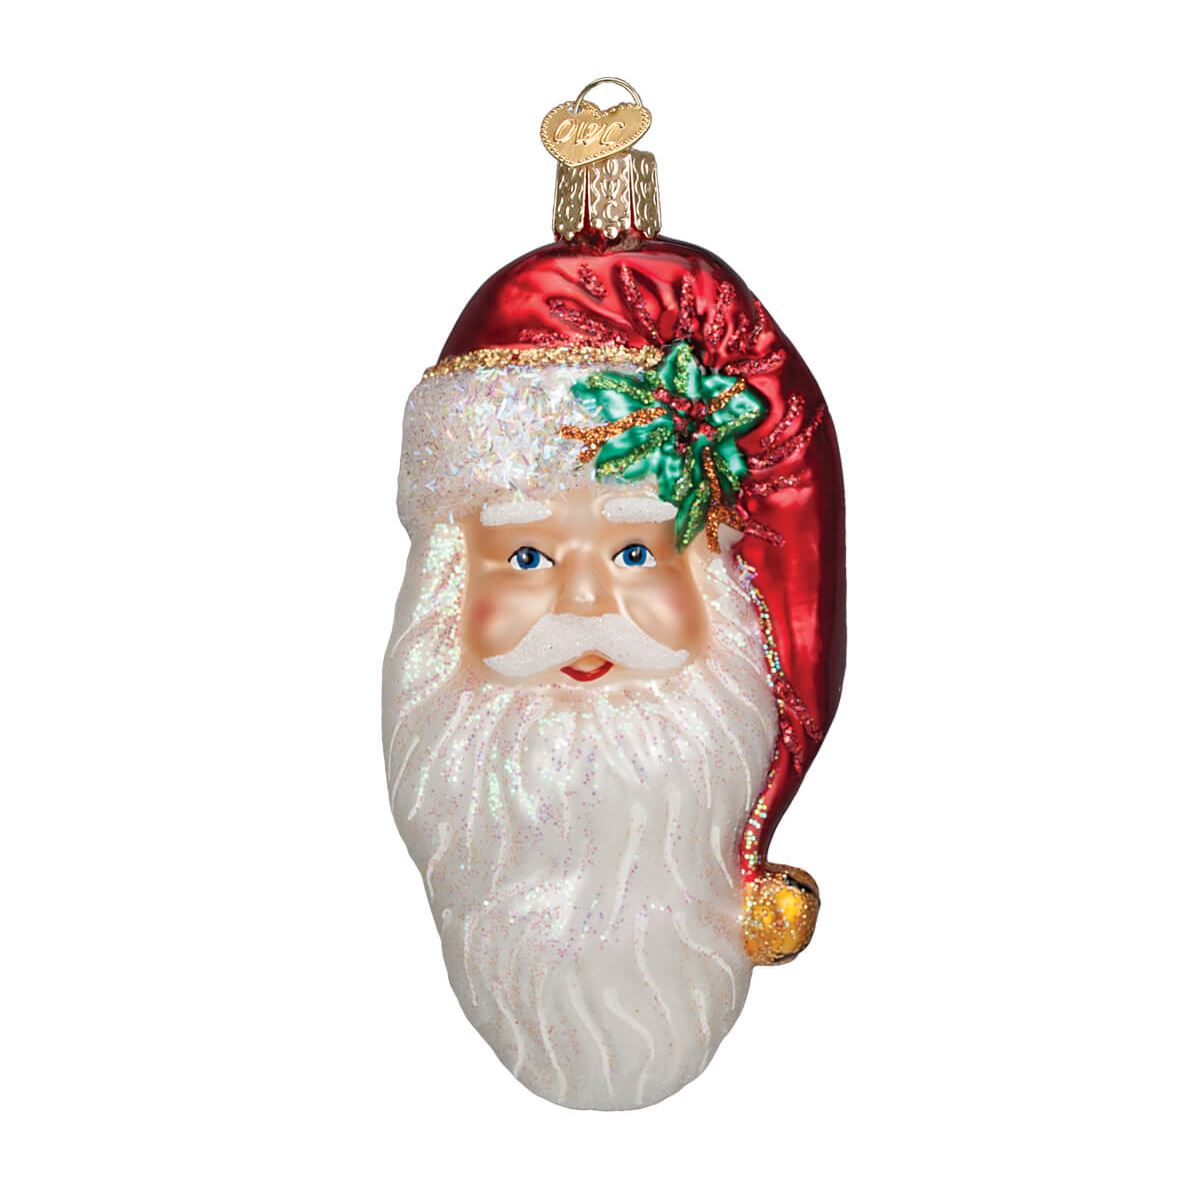 Nostalgic Santa Ornament